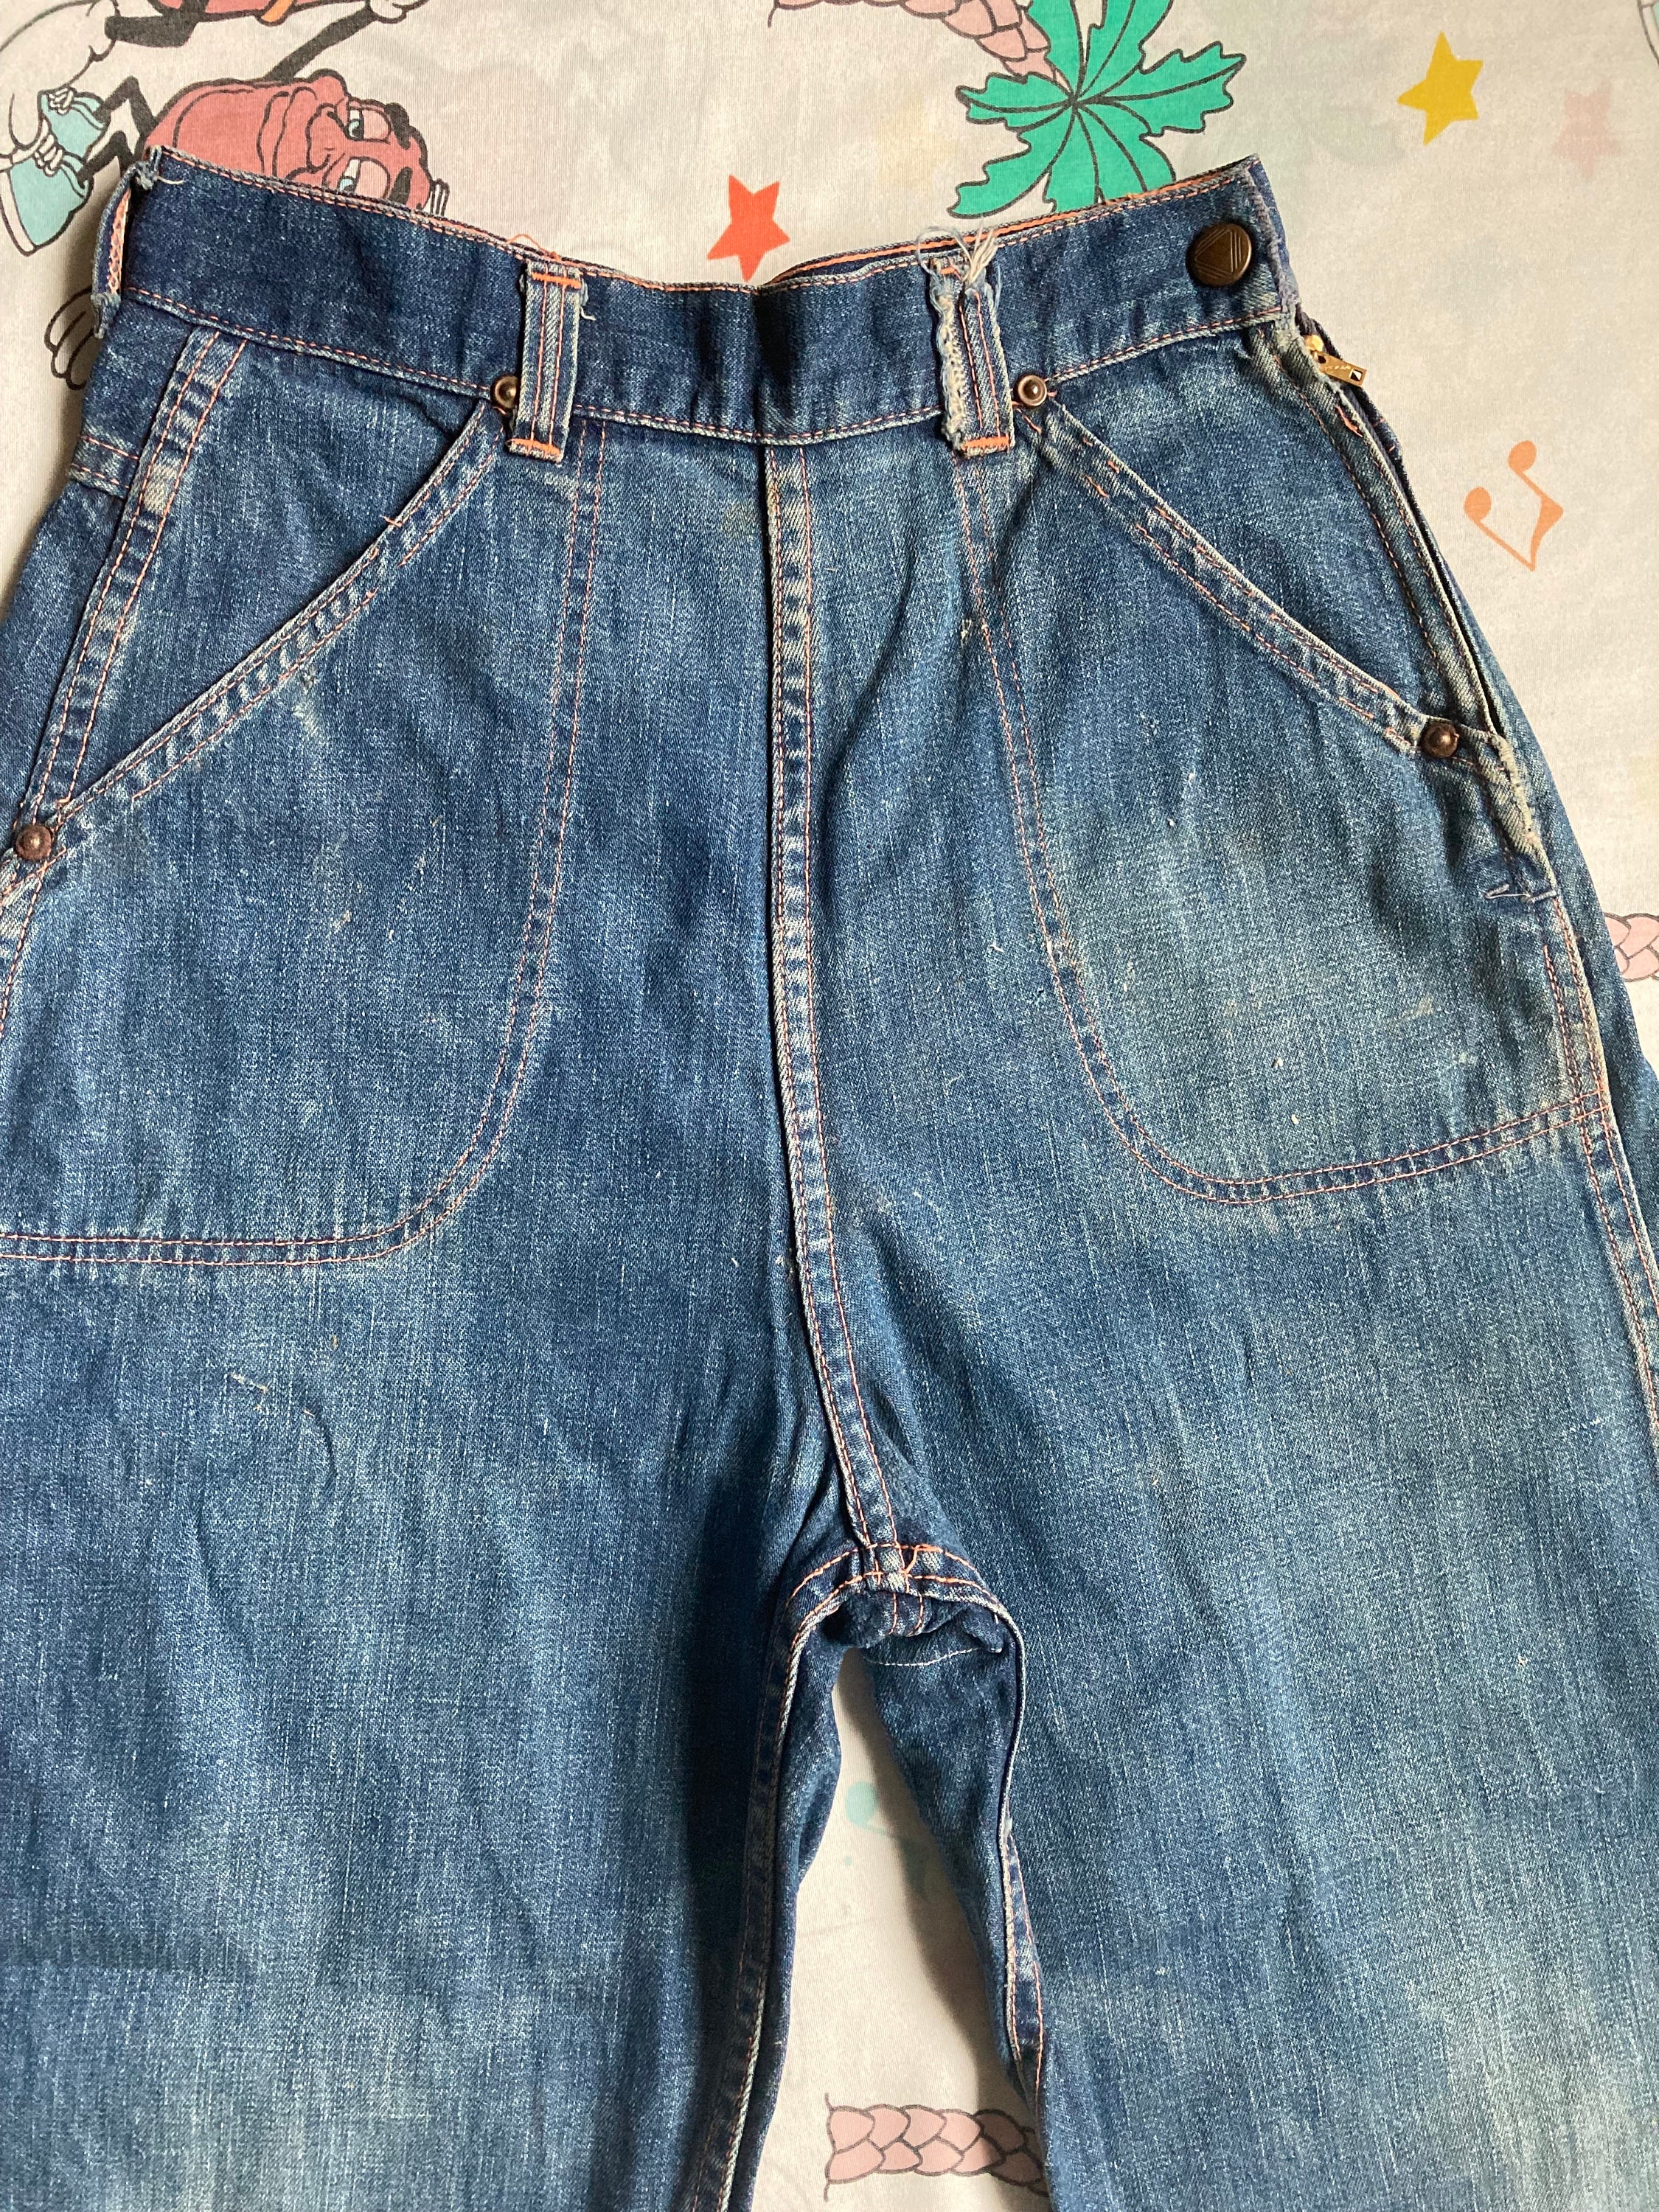 40s/50s Side Zip Jeans w/Talon Bell Zipper, Size XXS-Medium — May's Place:  Be Green. Buy Vintage.